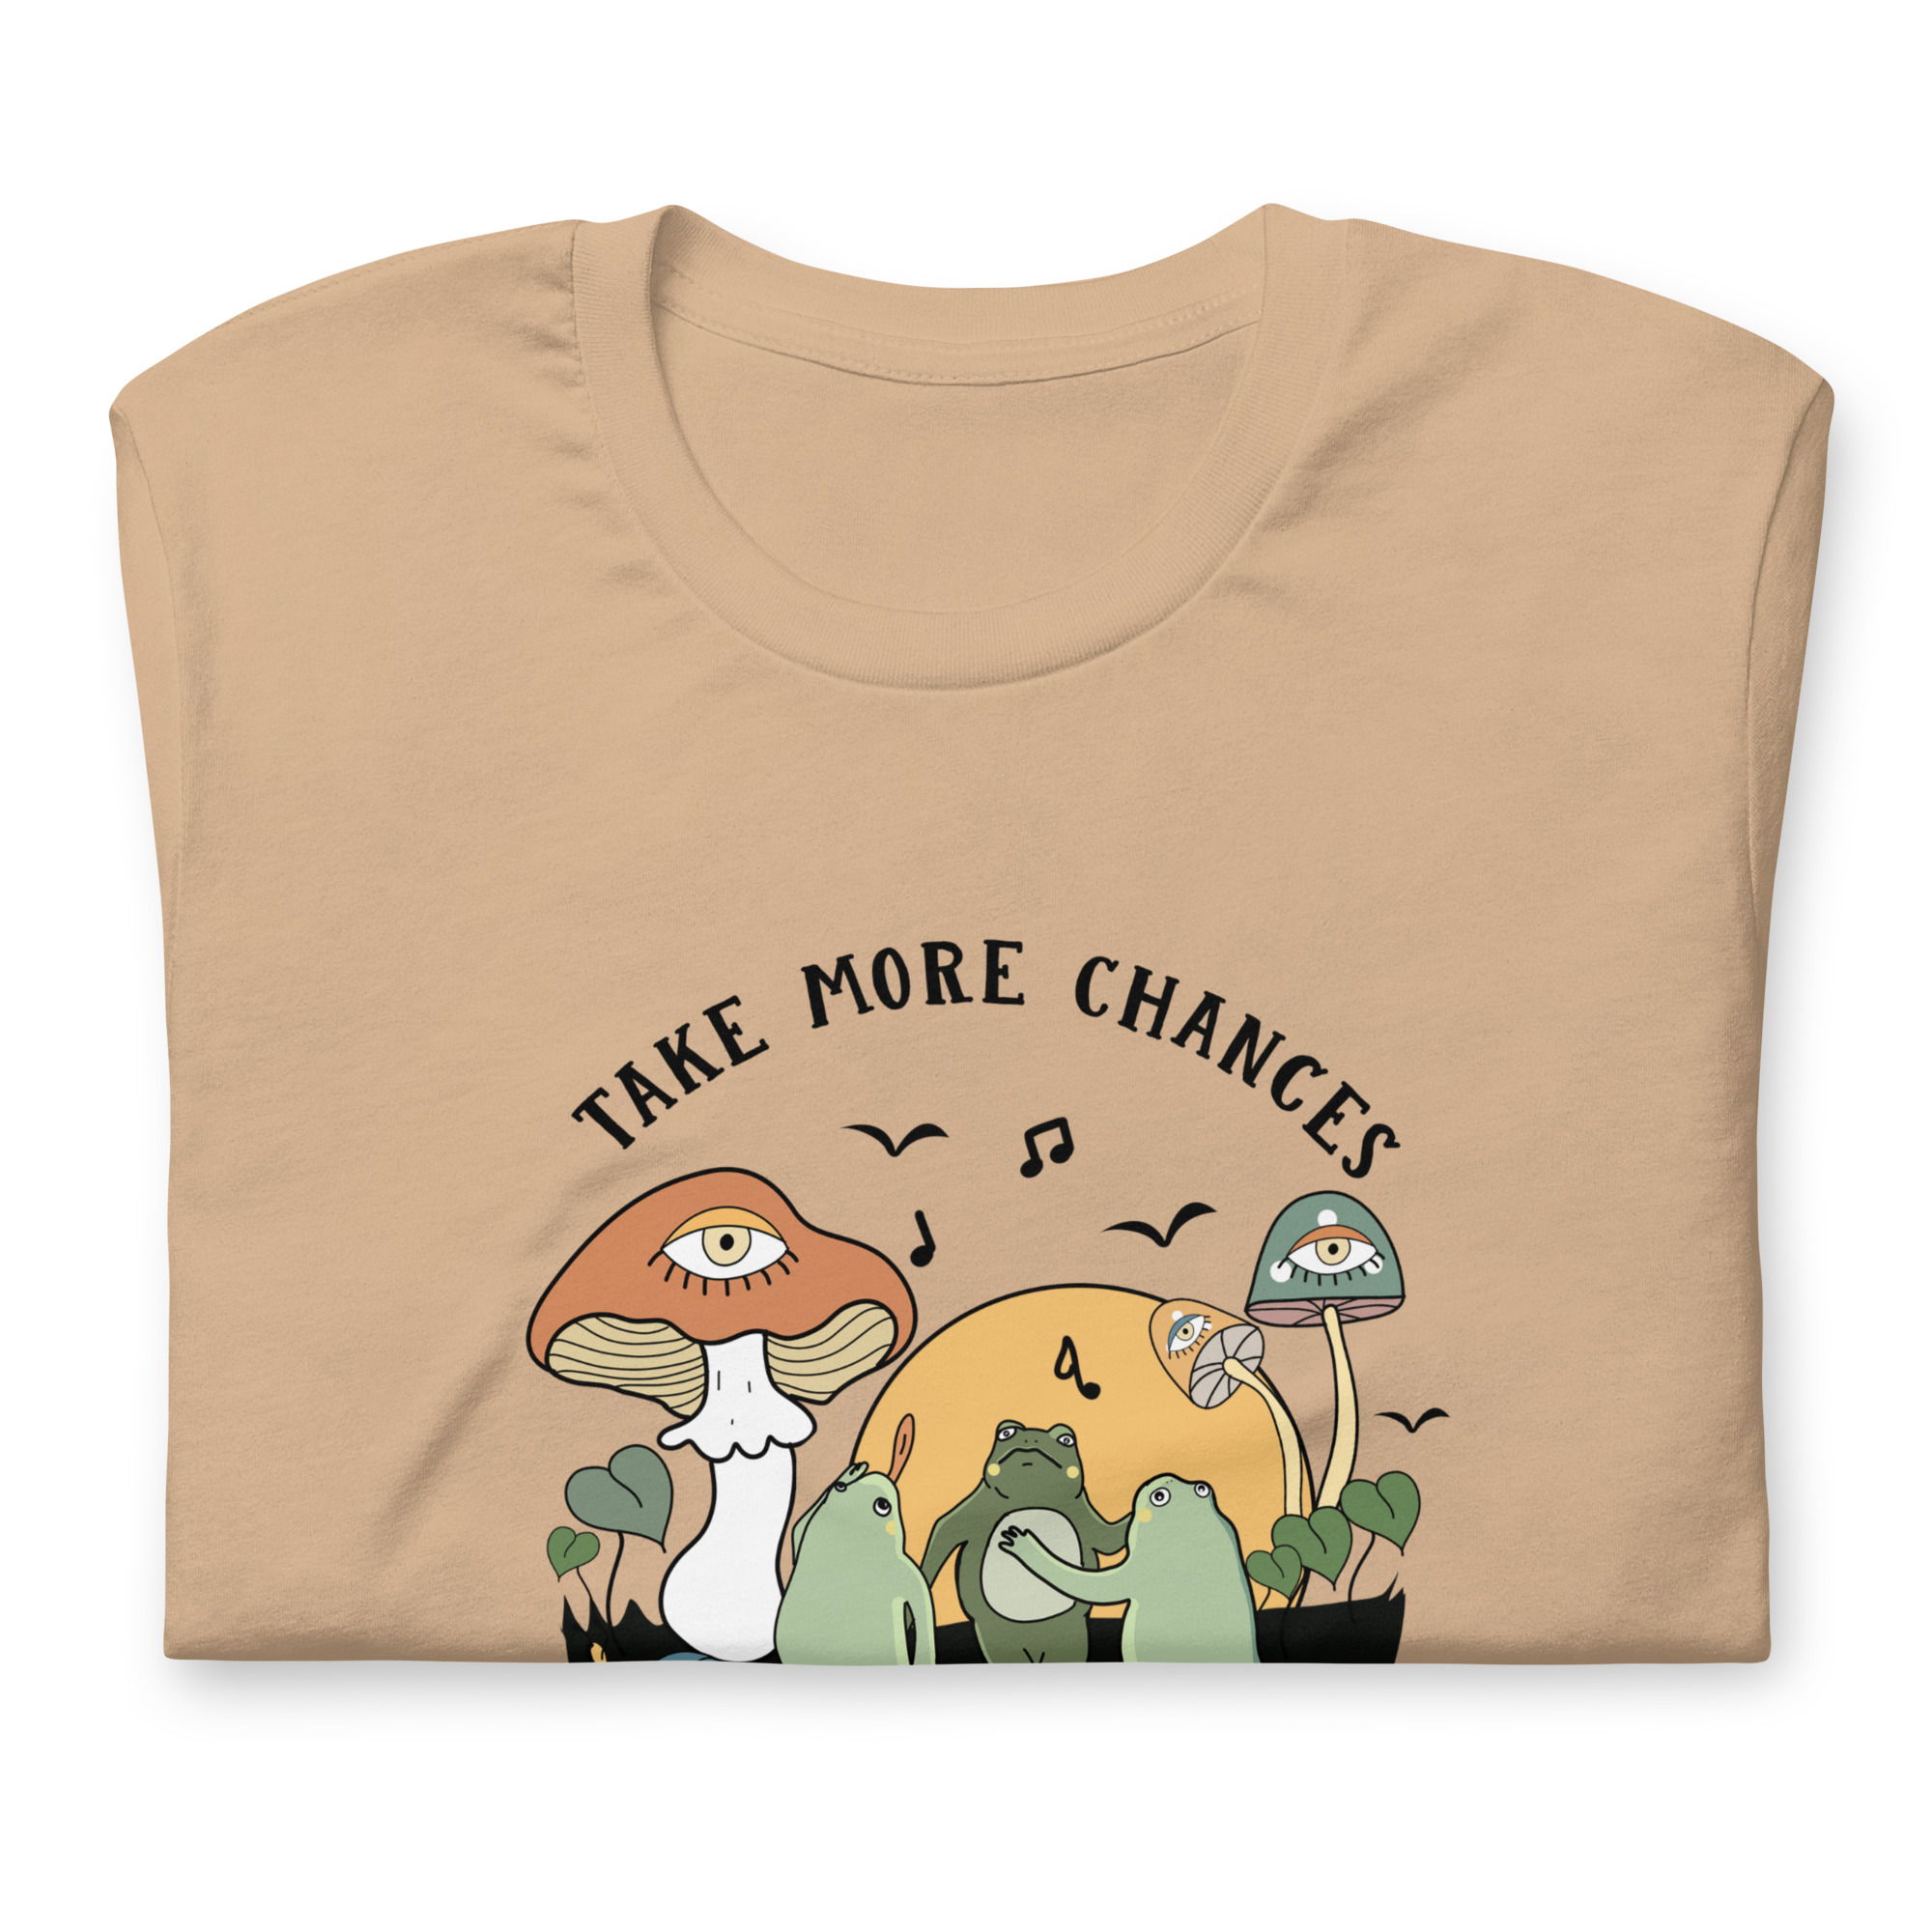 Take more chances dance more dances Unisex t-shirt - Meirelle